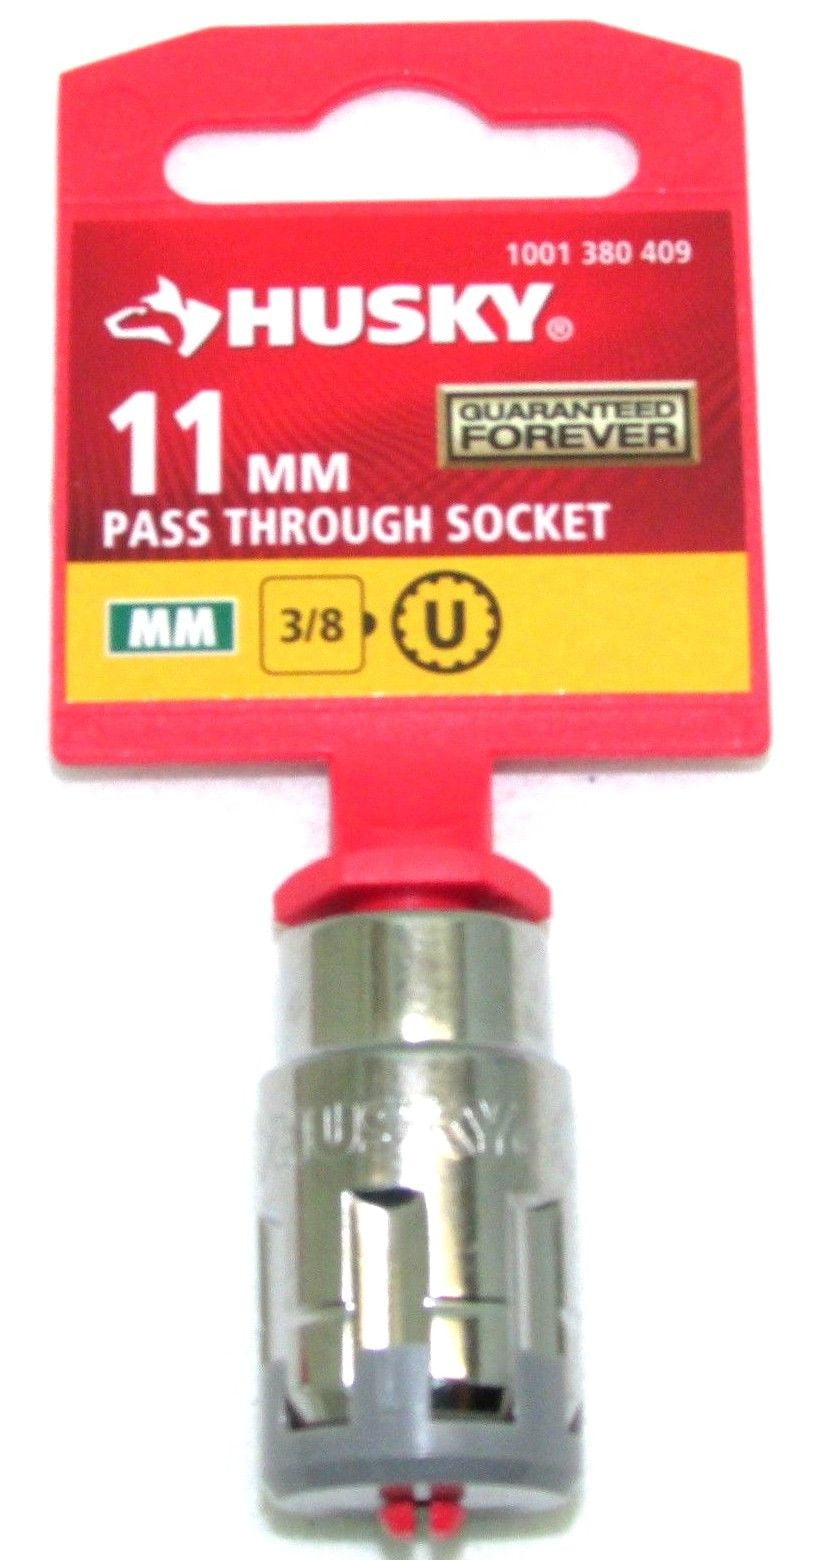 husky 3/8 in. drive 10 mm 6 point metric socket